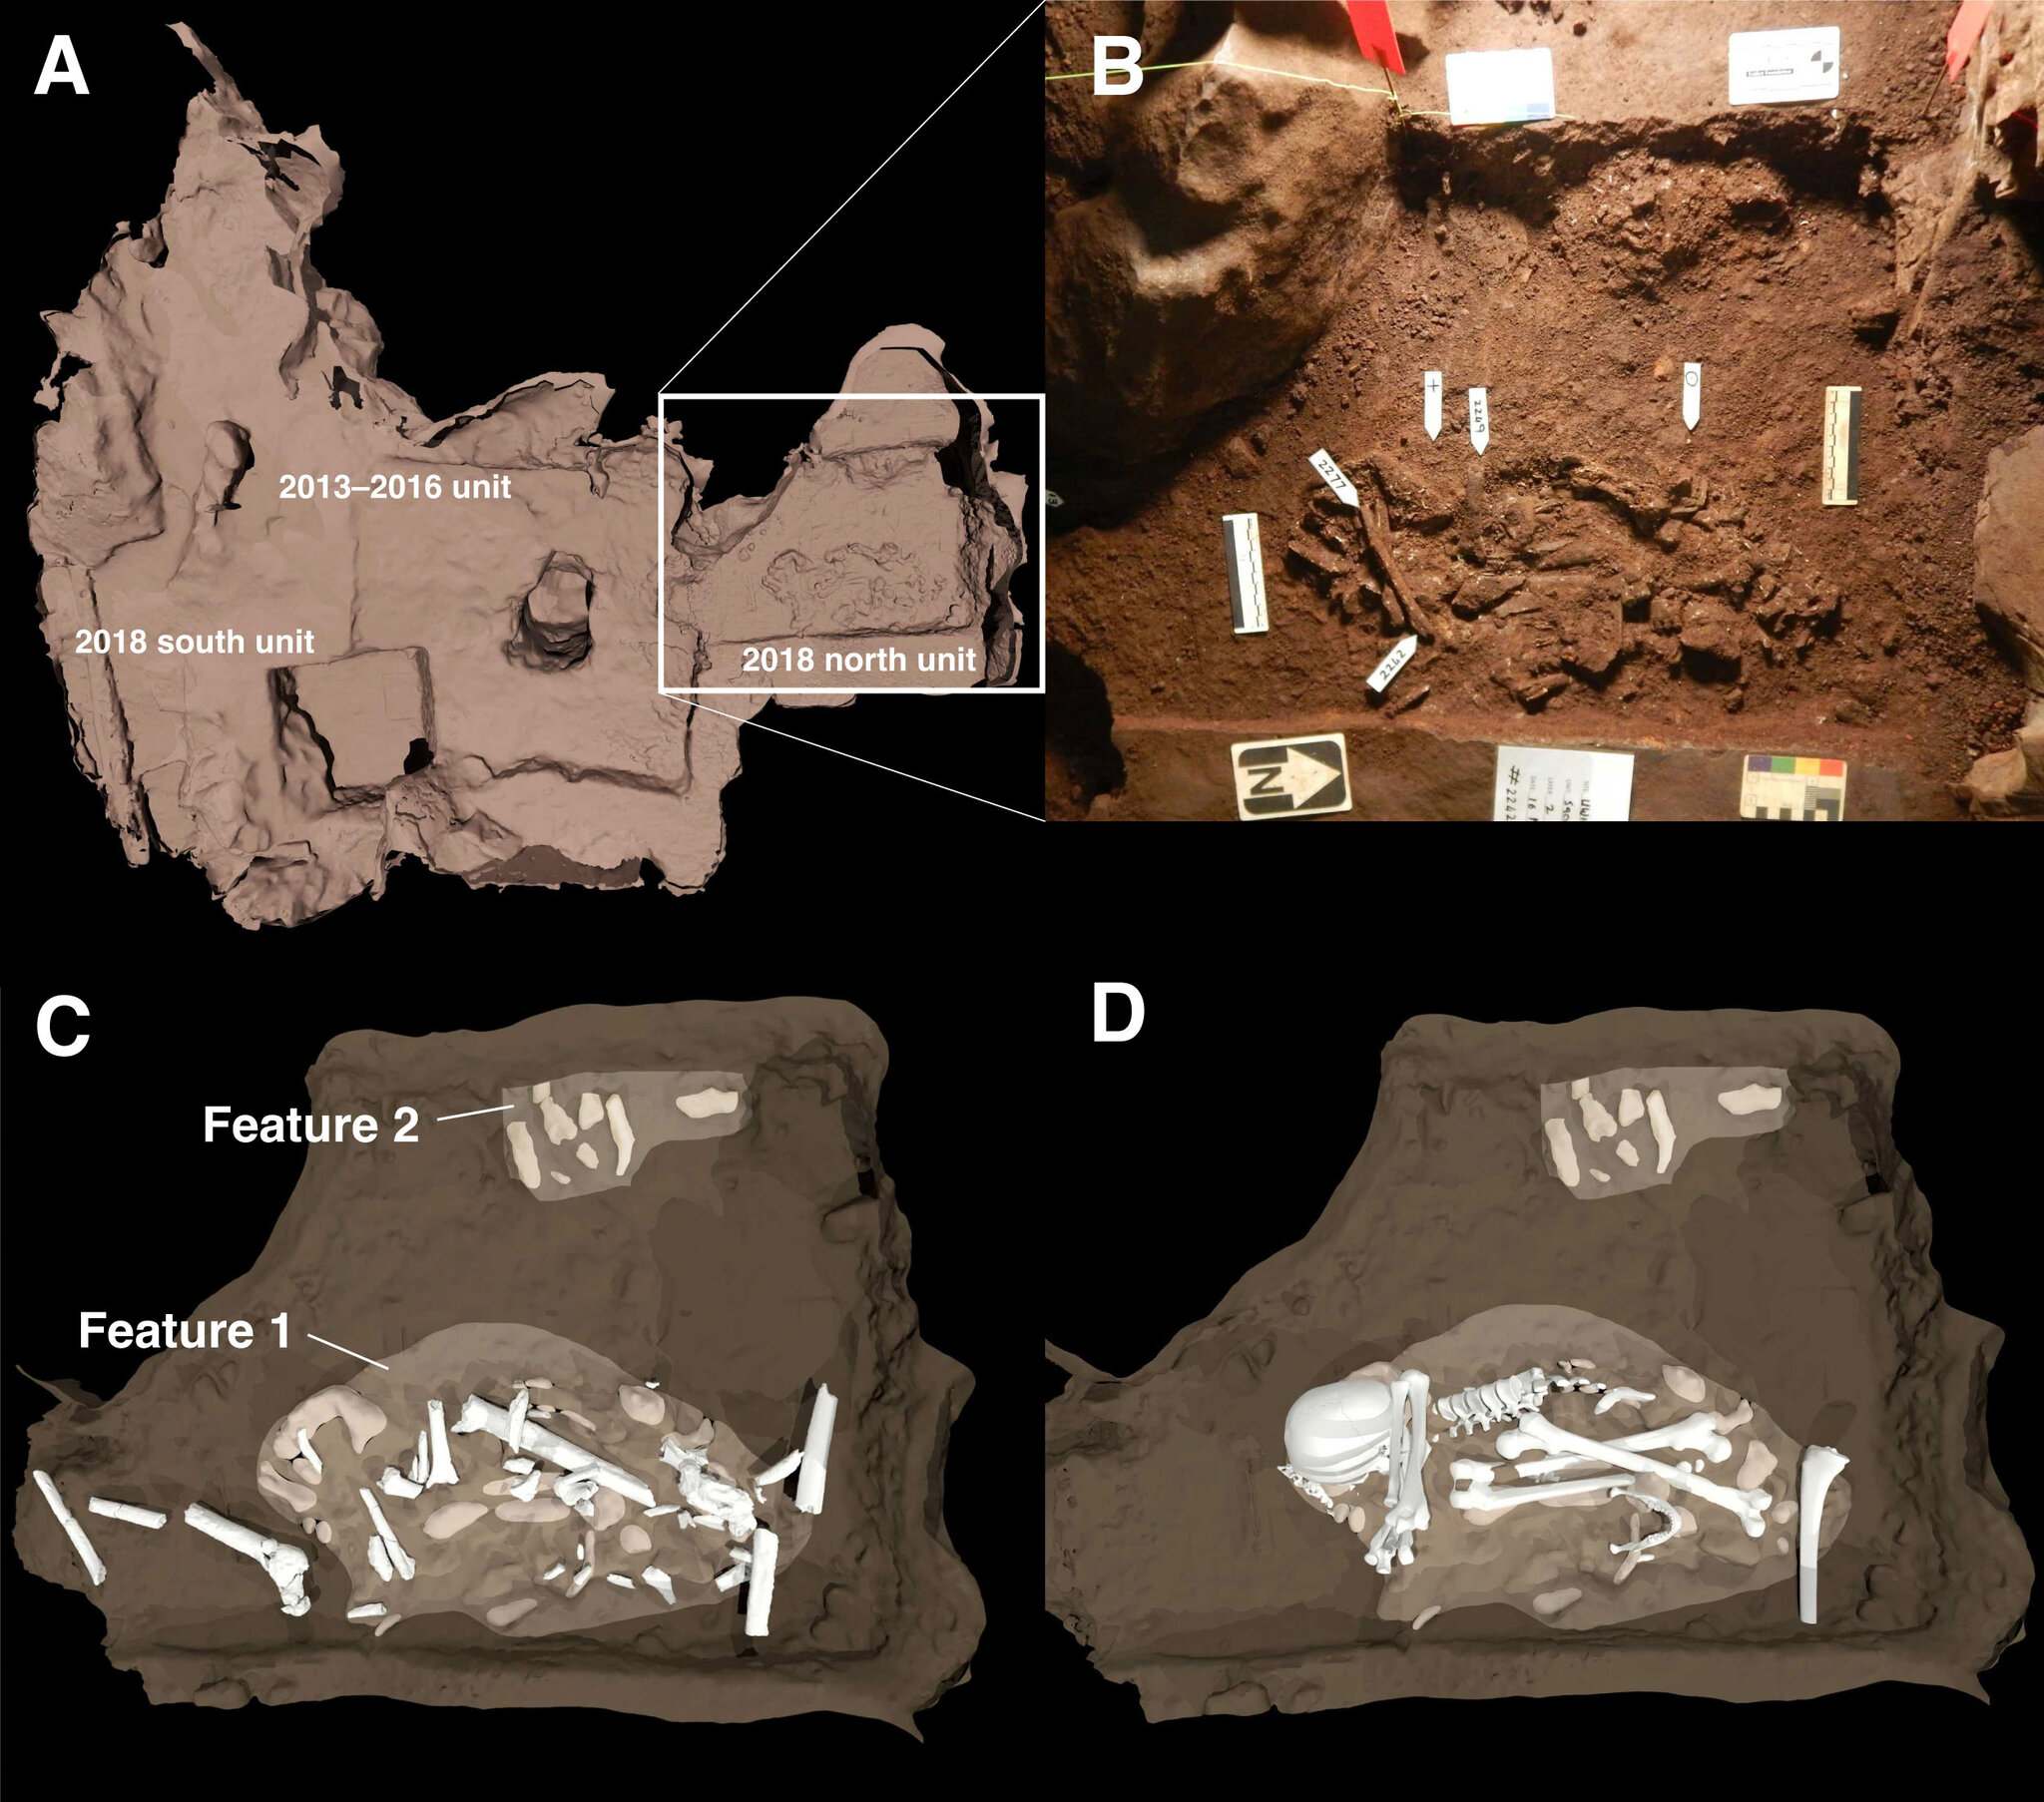 Көтерілген жұлдыз үңгірінің Диналеди камерасында табылған екі жерлеу нысанының схемасы. (A) 2013–2016 жылдардағы қазбаларға қатысты жерлеу орындарының орналасуы шаршы алаңмен сипатталған. B) Бұл жерлеудің негізгі белгілерінің фотосуреті. 1-мүмкіндік - Homo naledi ересек үлгісінің денесі. 2-ерекше жерлеу орнының шетінде кем дегенде бір жасөспірімнің денесін көрсетеді. (C) және (D) сүйектердің қабірлердің ішінде қалай орналасқанын көрсететін суреттер.